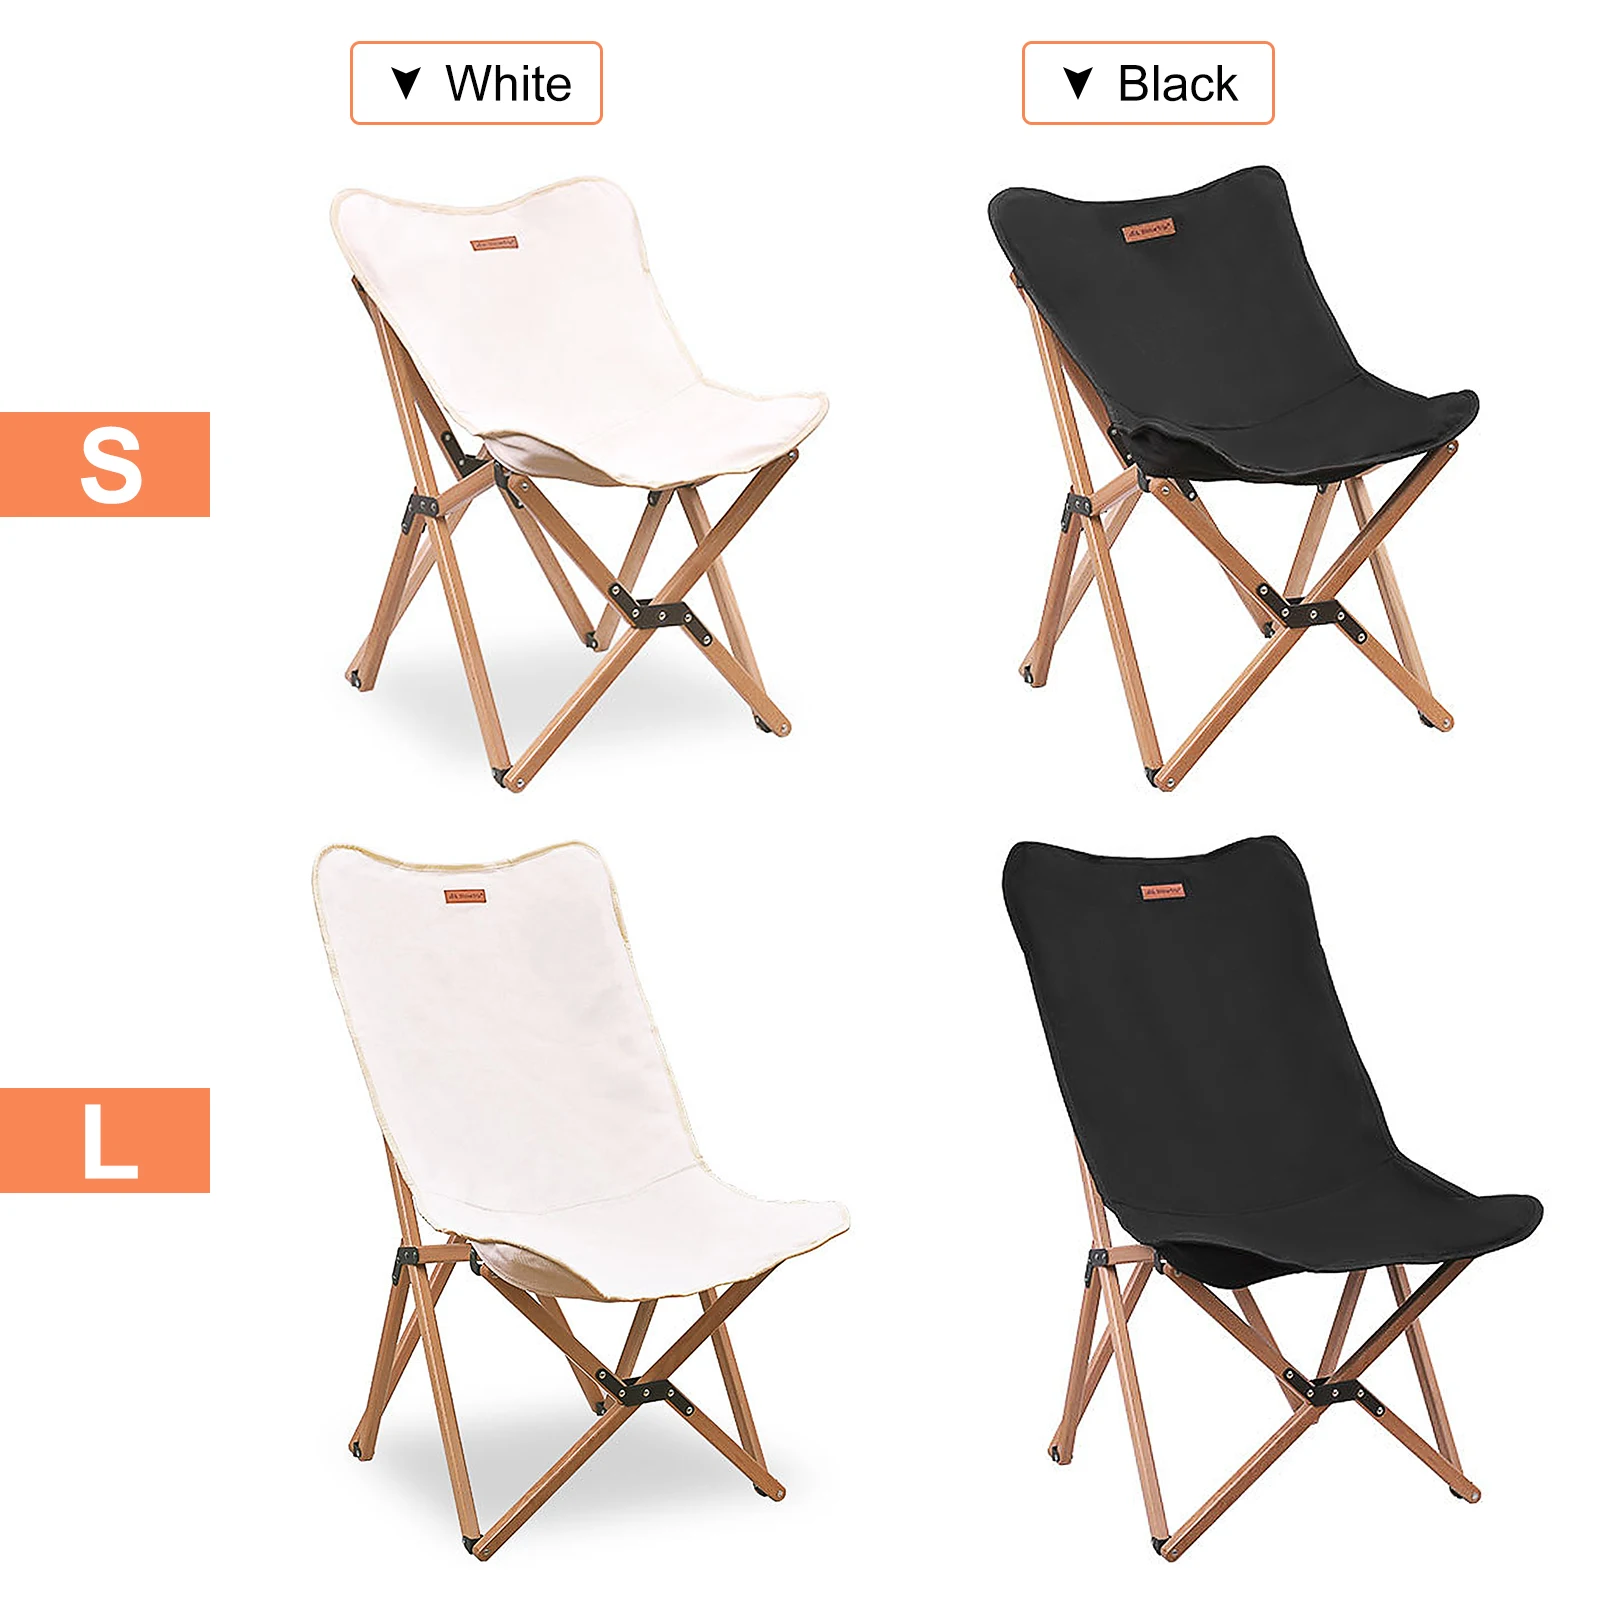 저렴한 ShineTrip 휴대용 접는 의자 야외 나무 의자 캠핑 하이킹 해변 피크닉 바베큐 여행을위한 스토리지 가방과 캠핑 의자